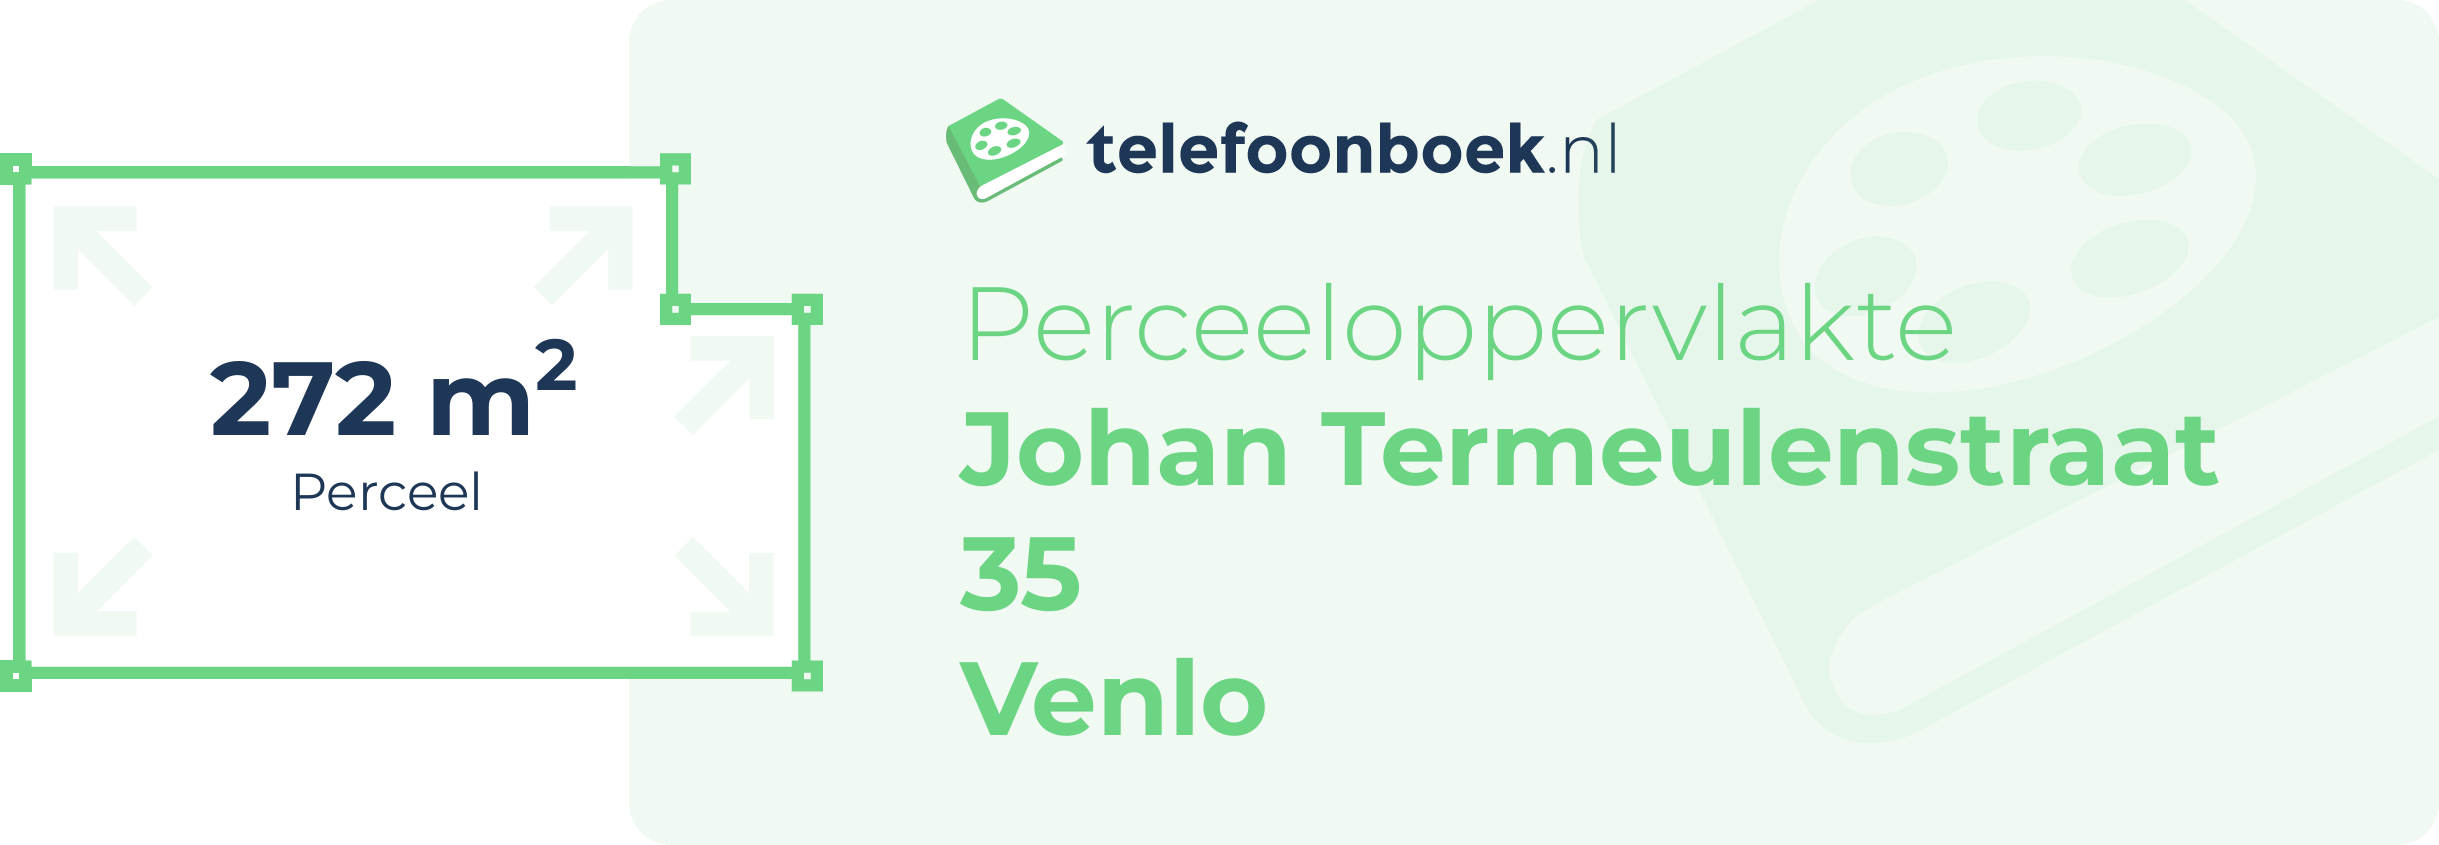 Perceeloppervlakte Johan Termeulenstraat 35 Venlo